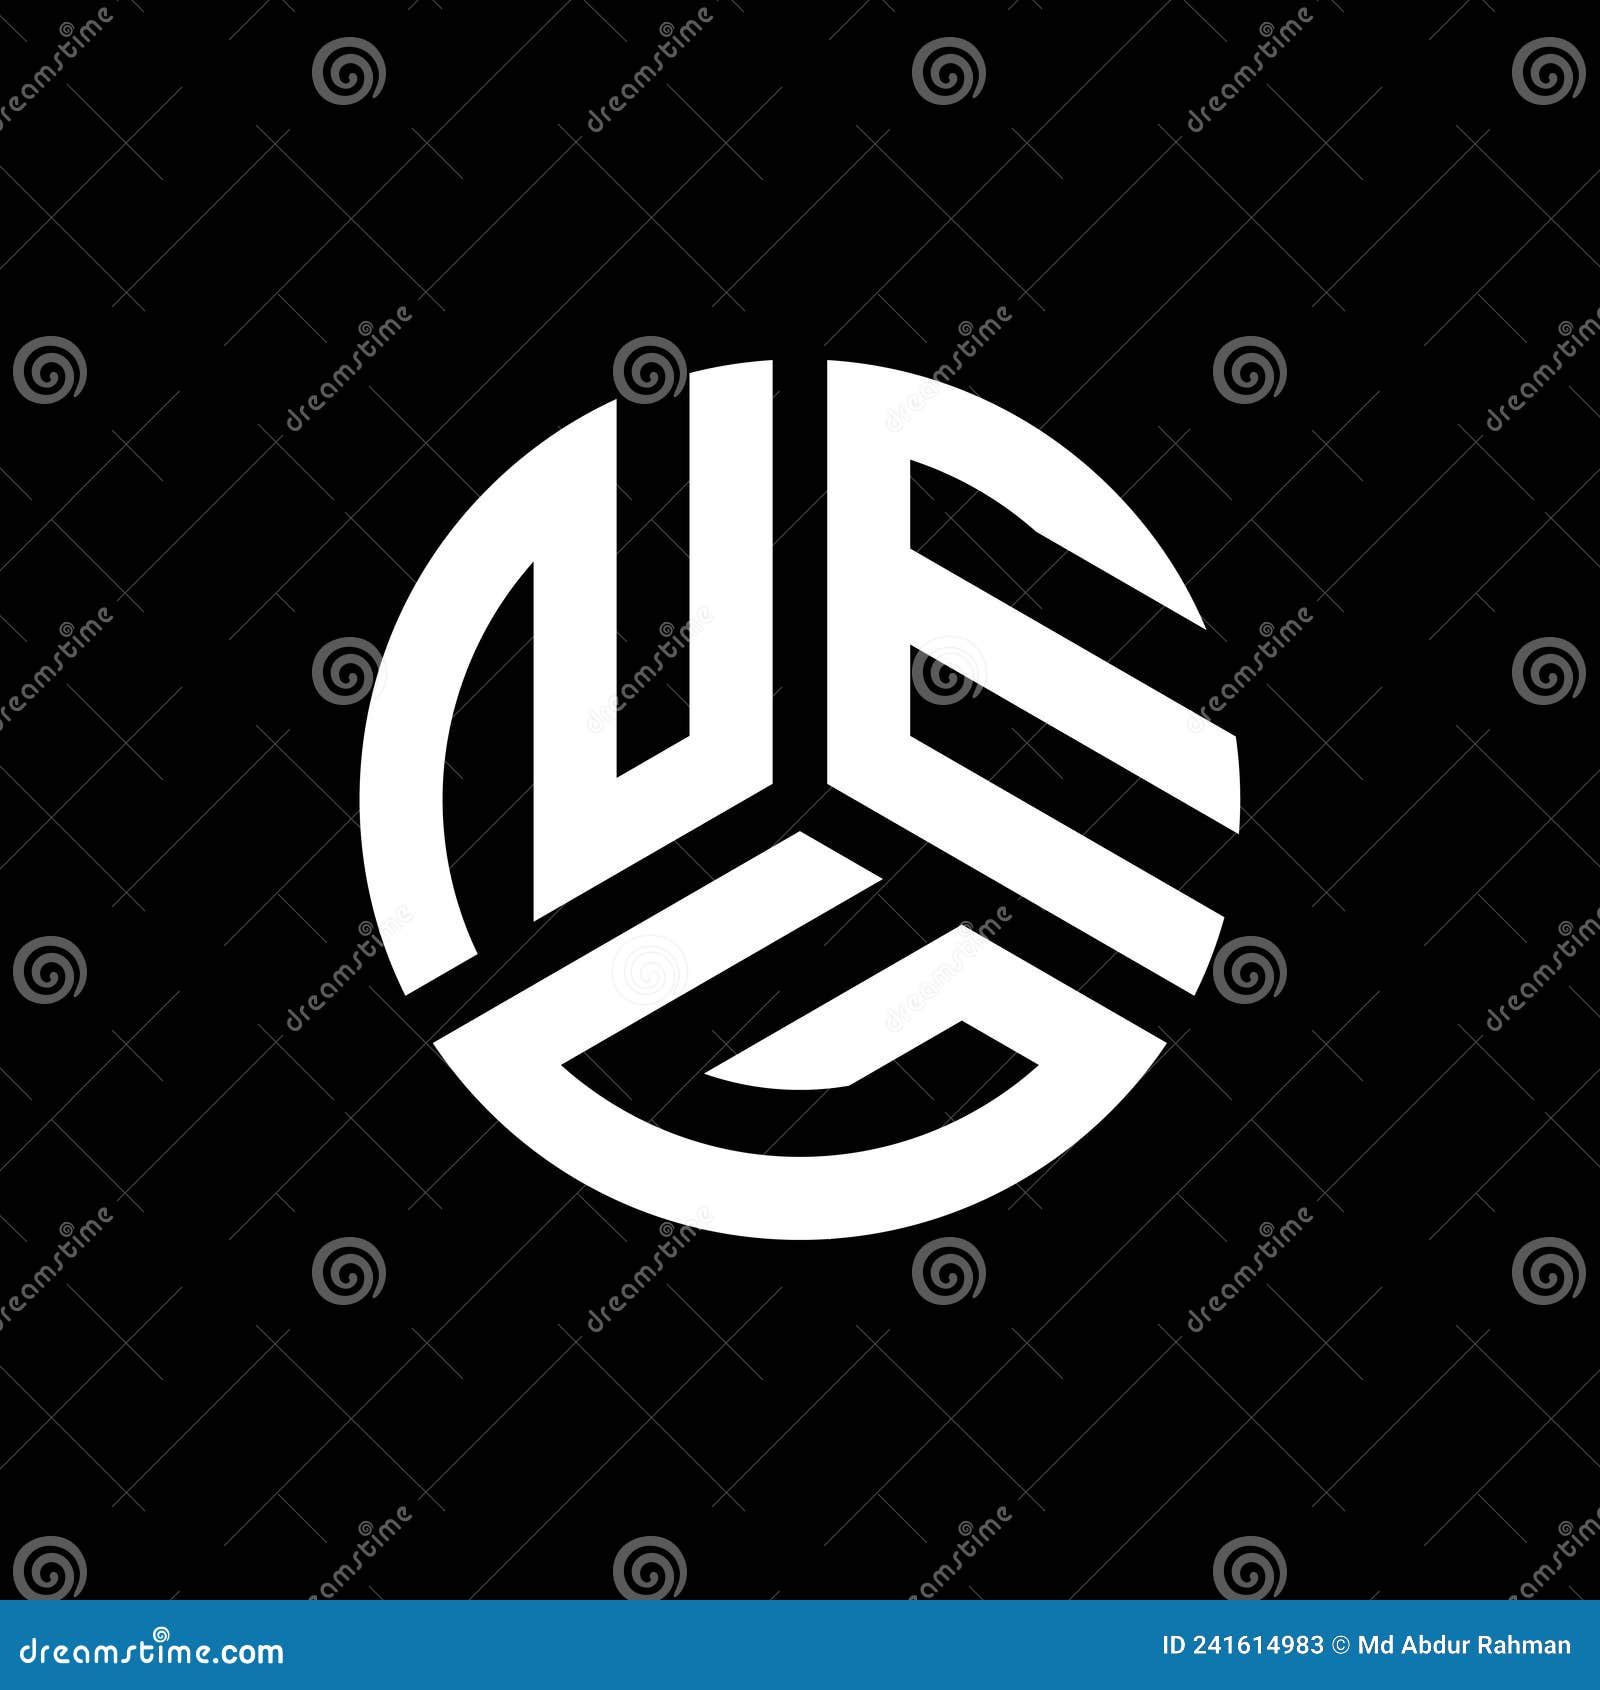 neg letter logo  on black background. neg creative initials letter logo concept. neg letter 